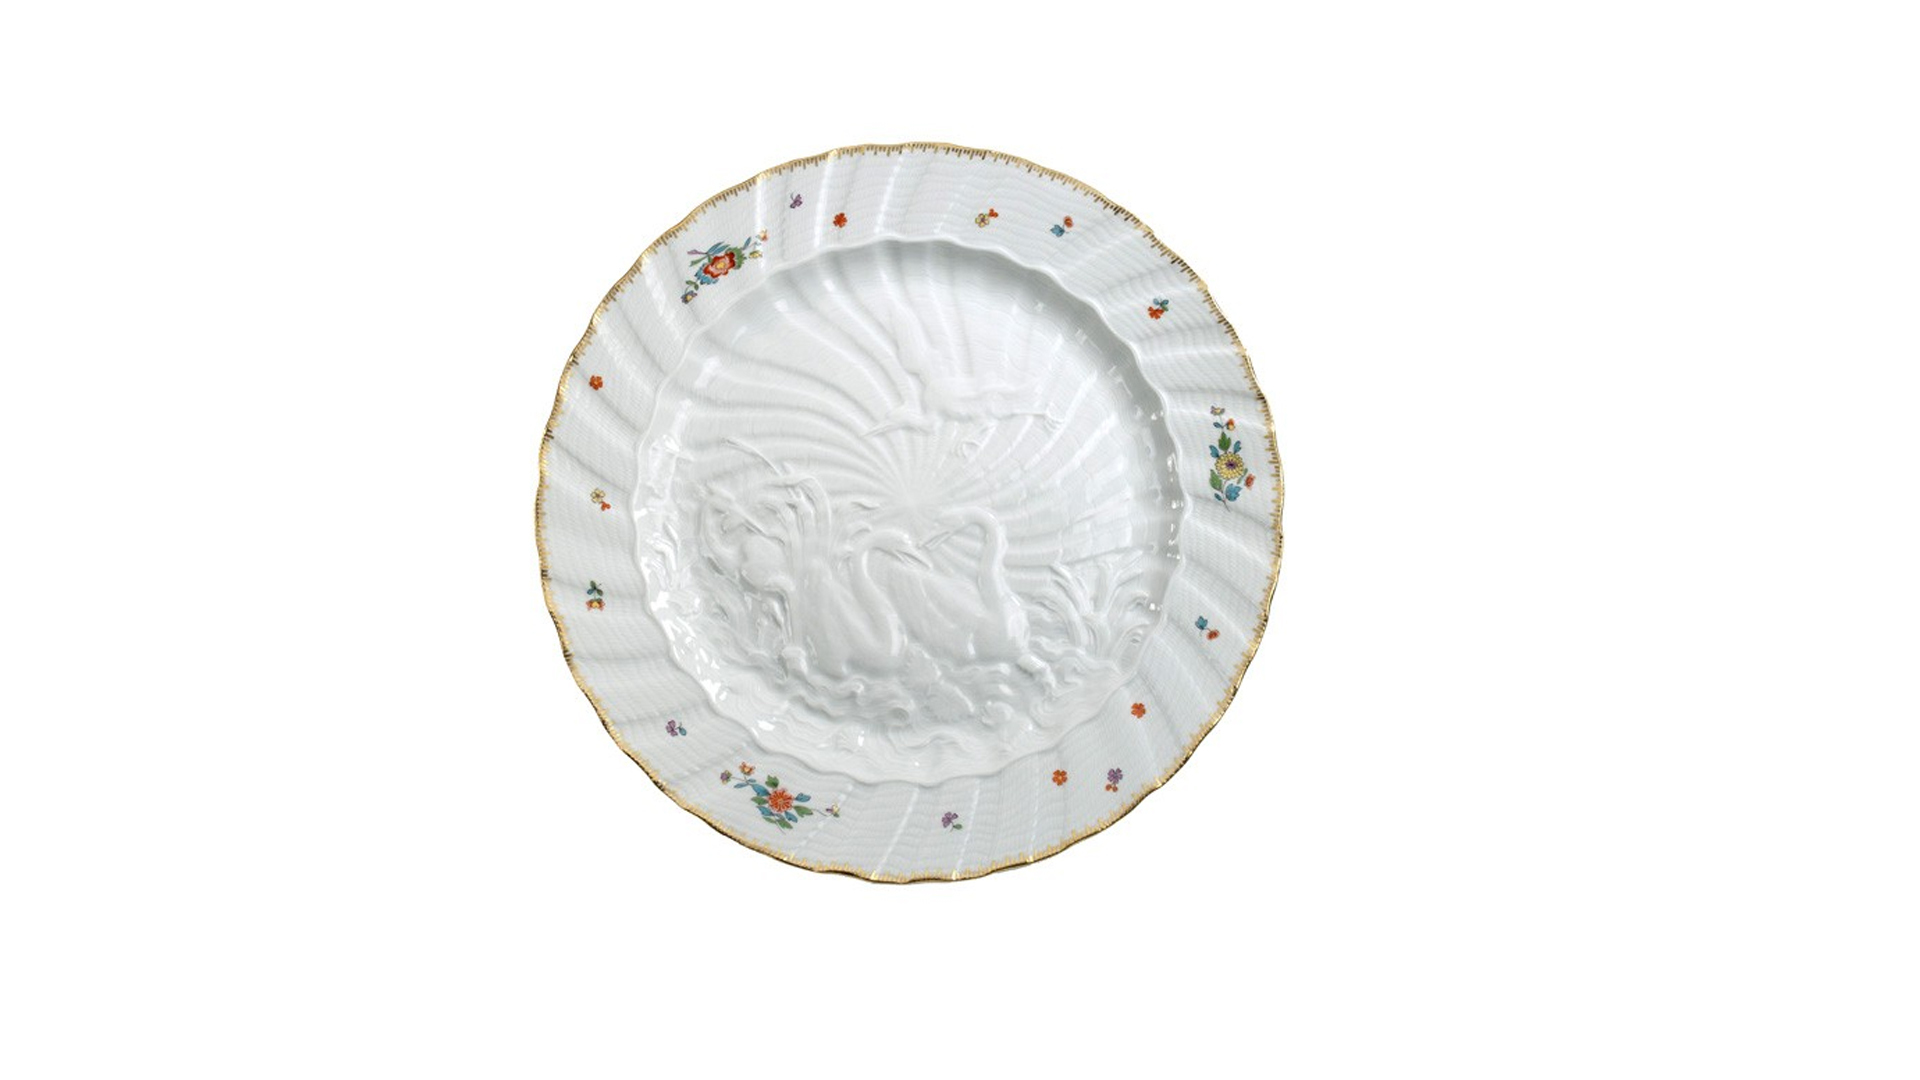 Тарелка обеденная Meissen 28 см Лебединый сервиз, индийские цветы